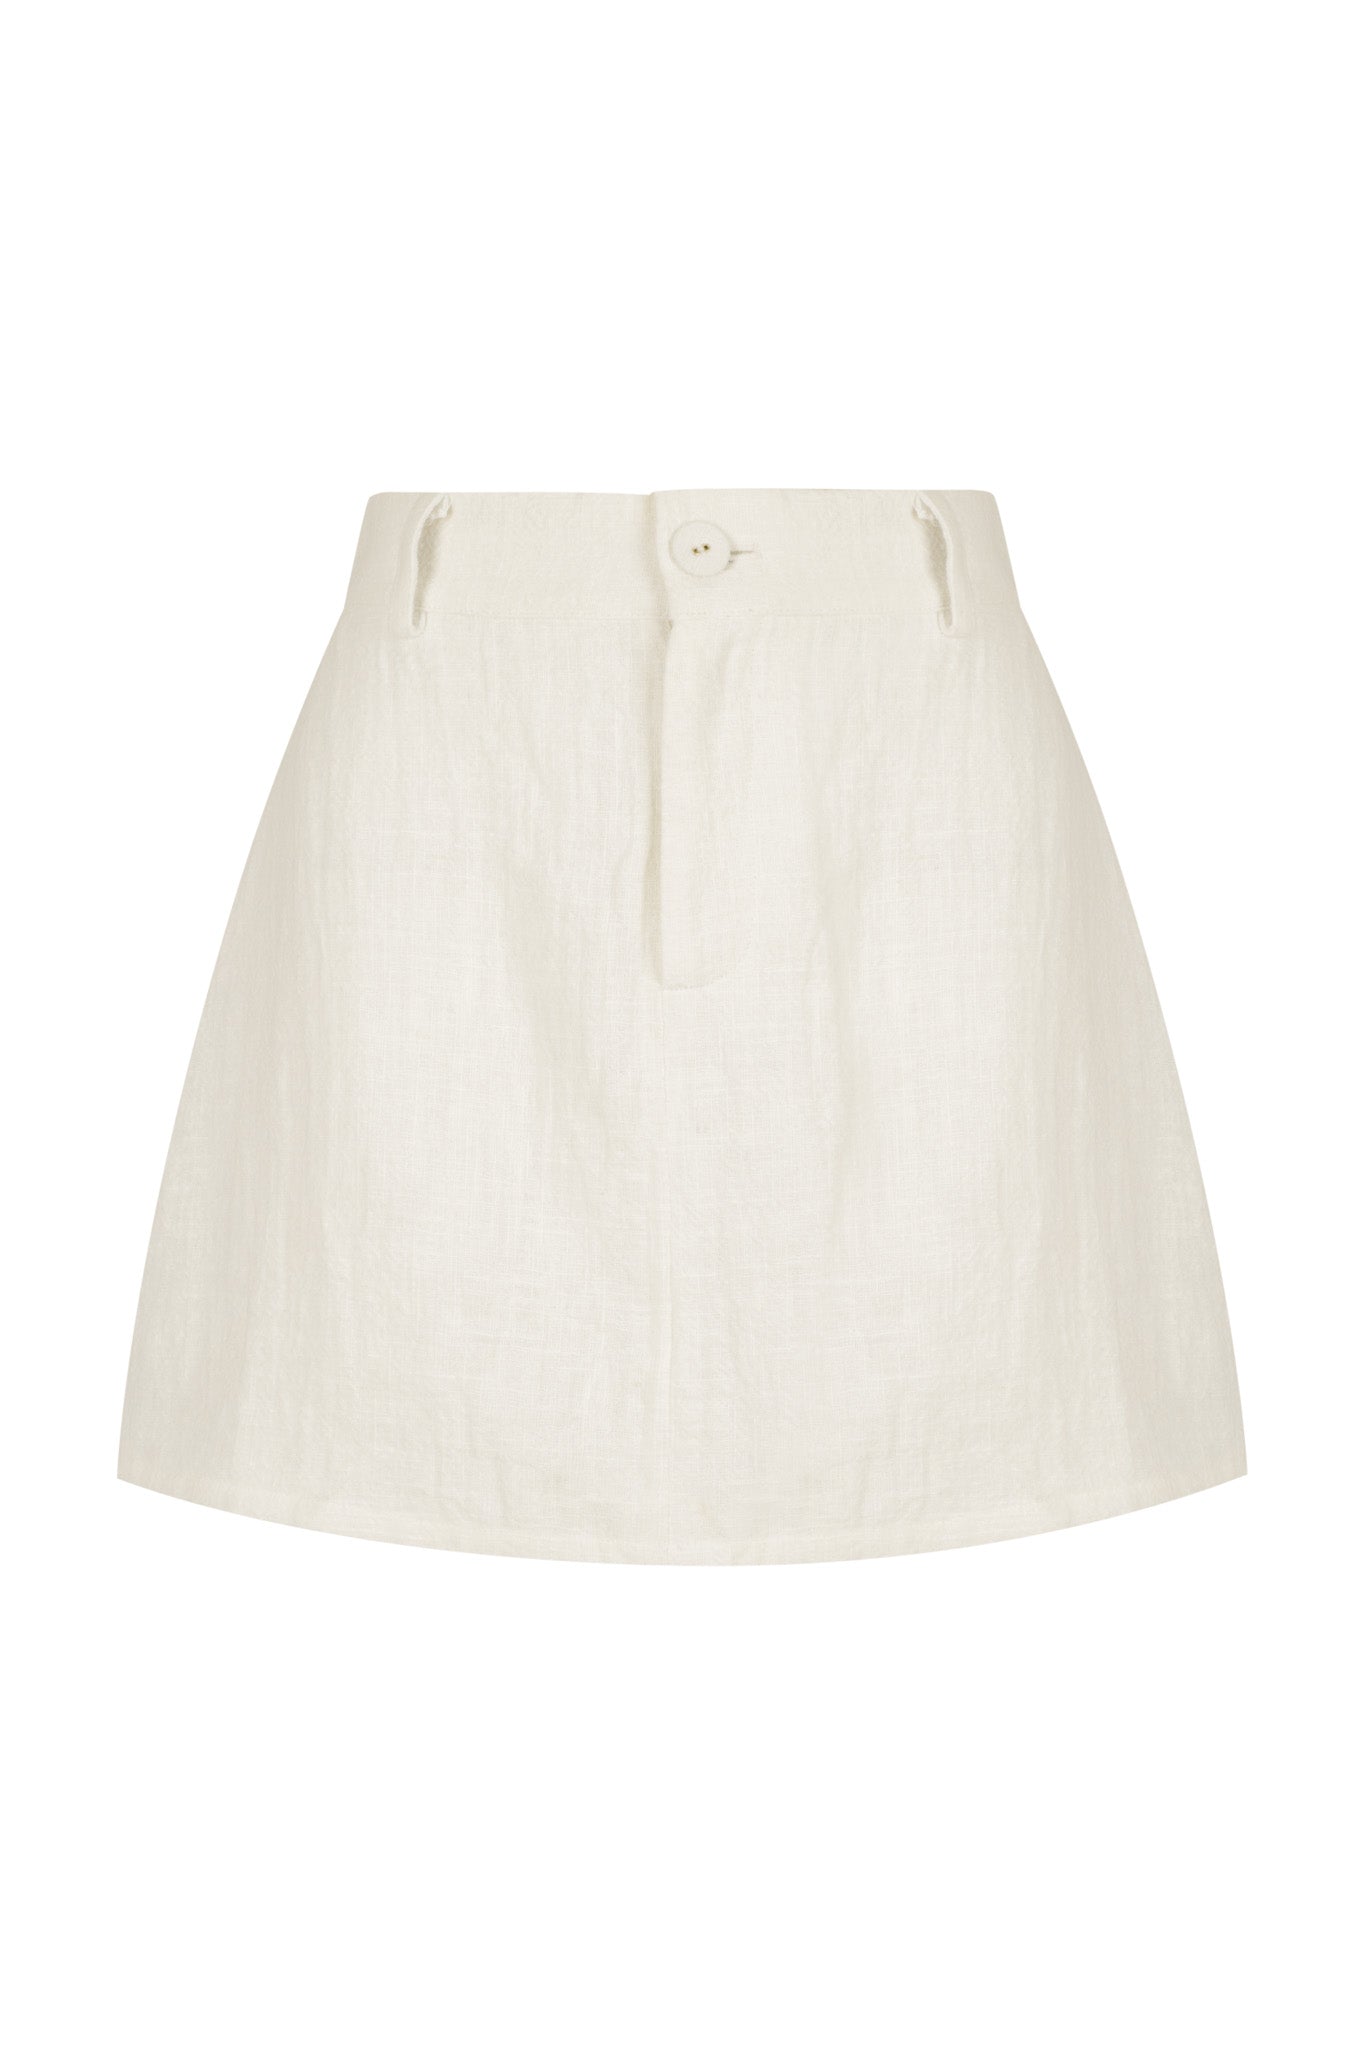 Fallon White Skirt